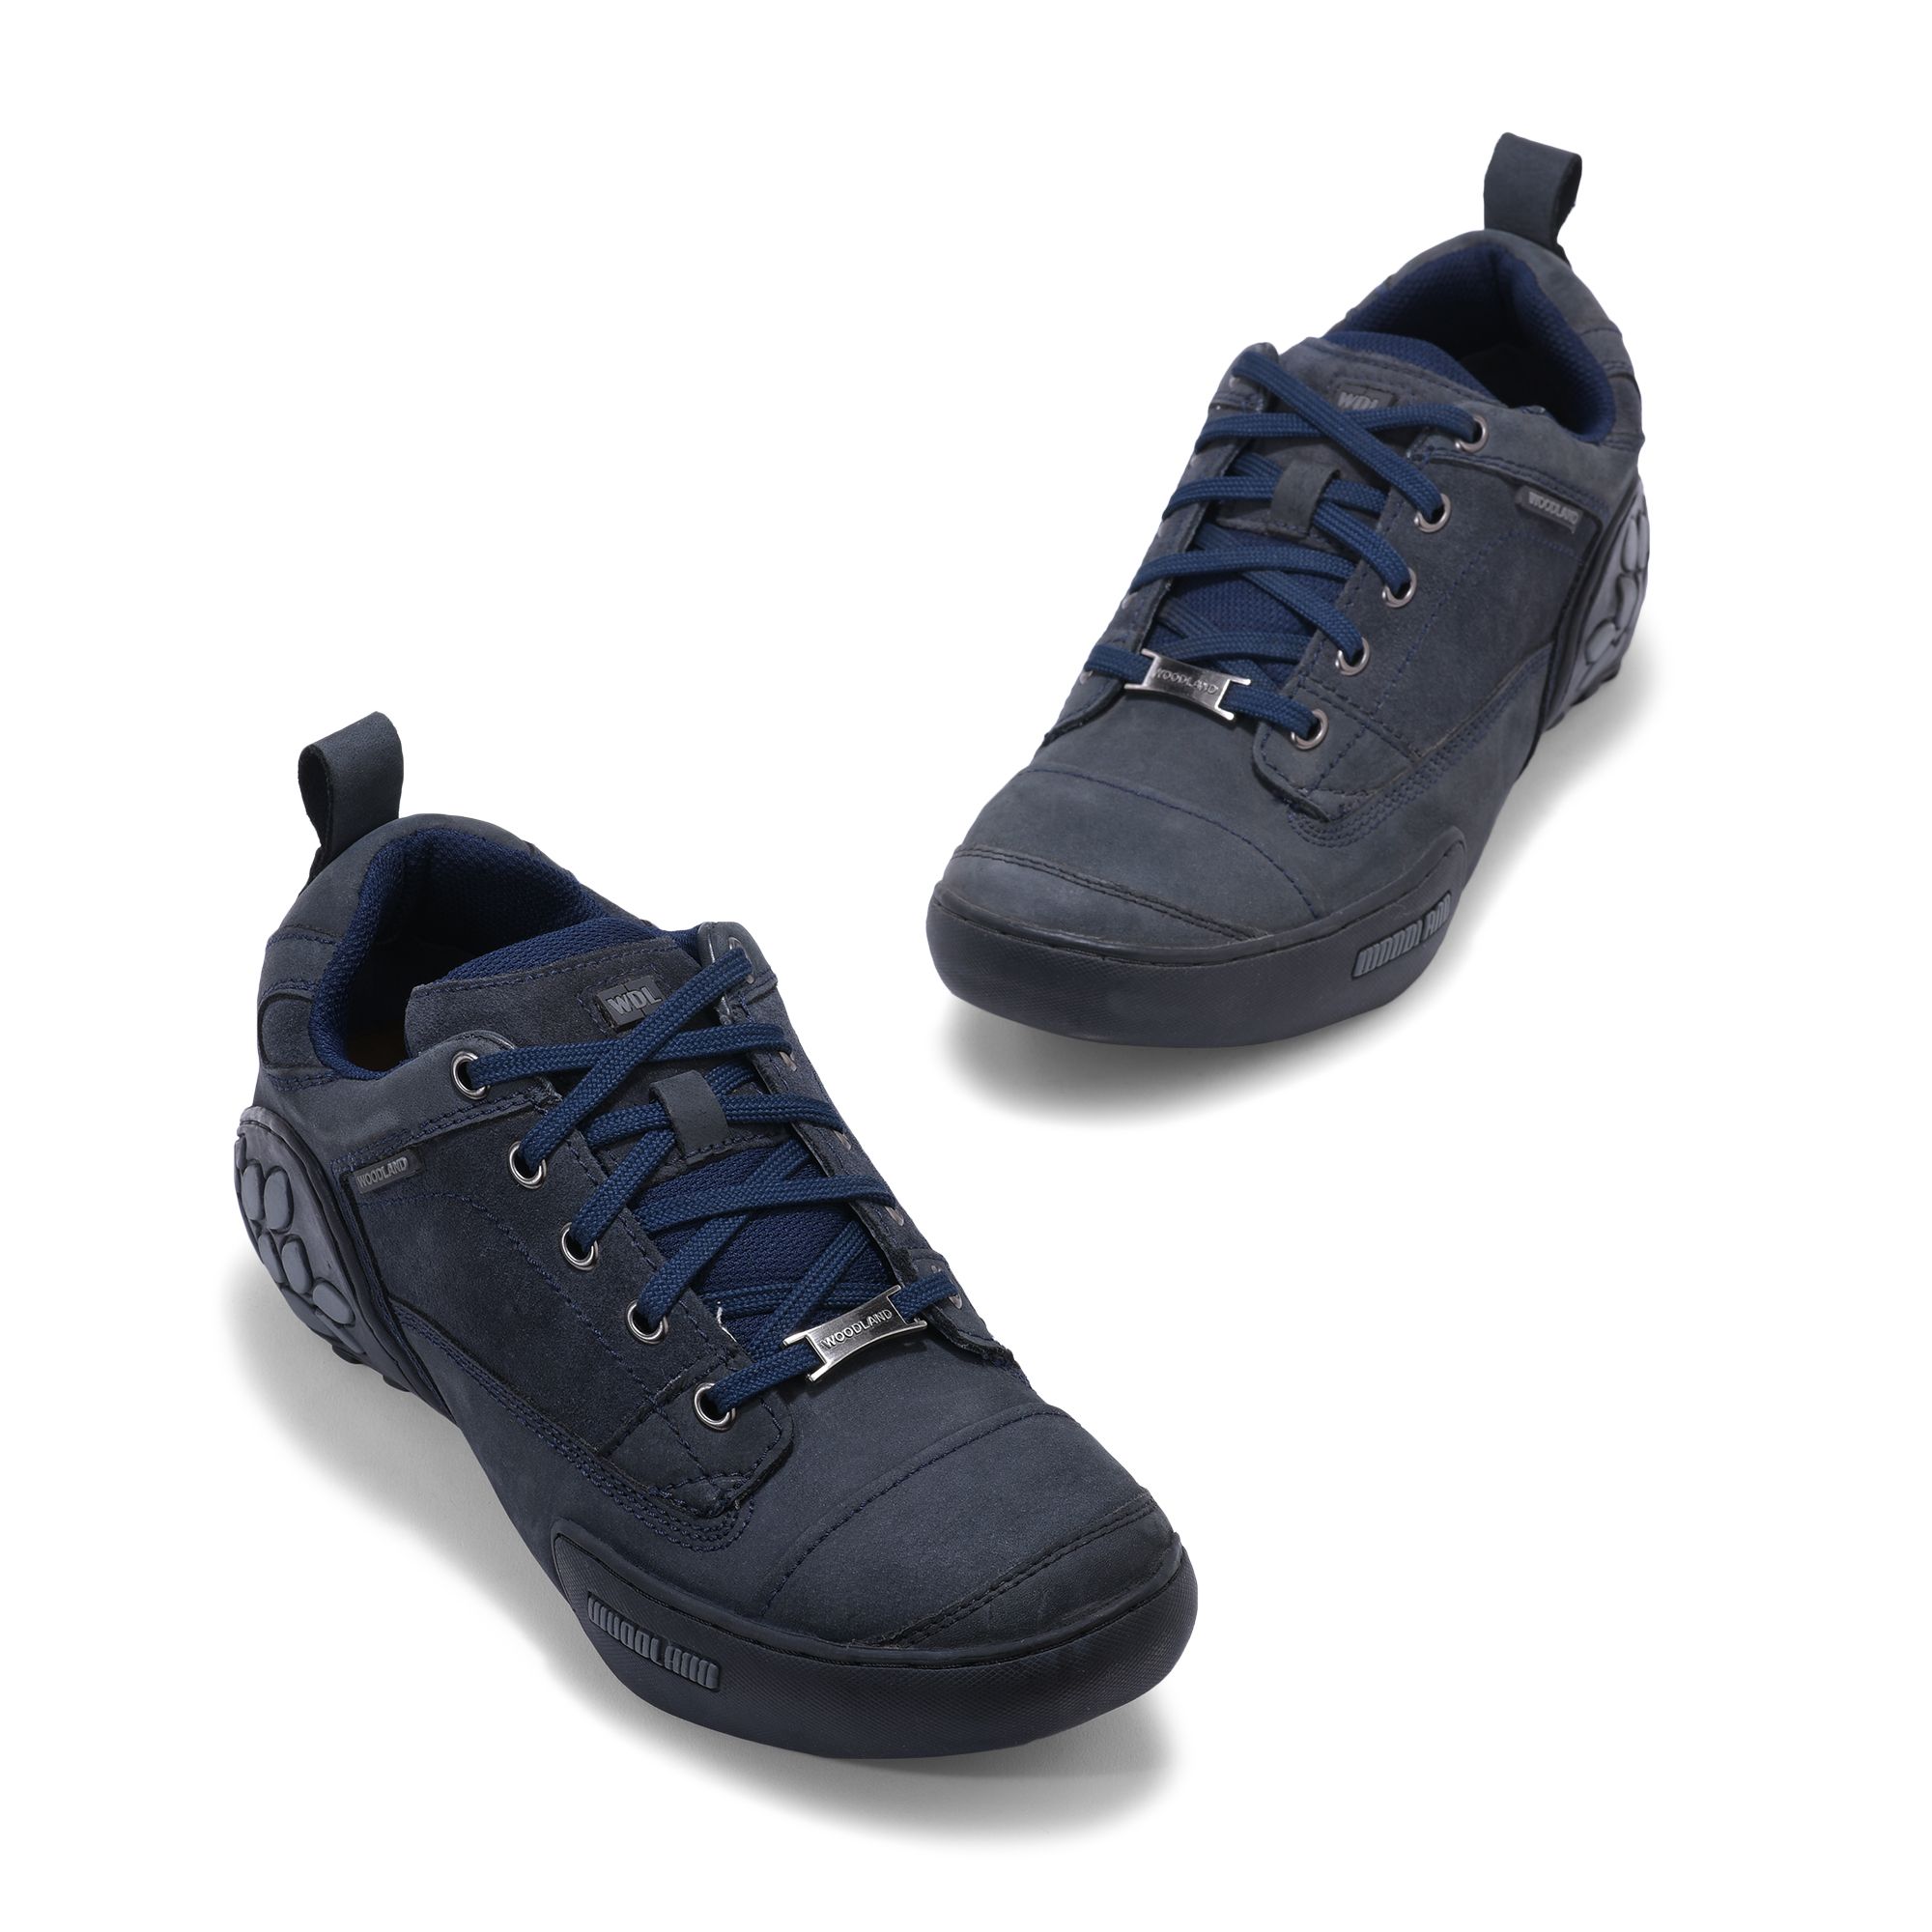 Buy Woodland Mens Sneaker, Black, 6 UK (40 EU) at Amazon.in